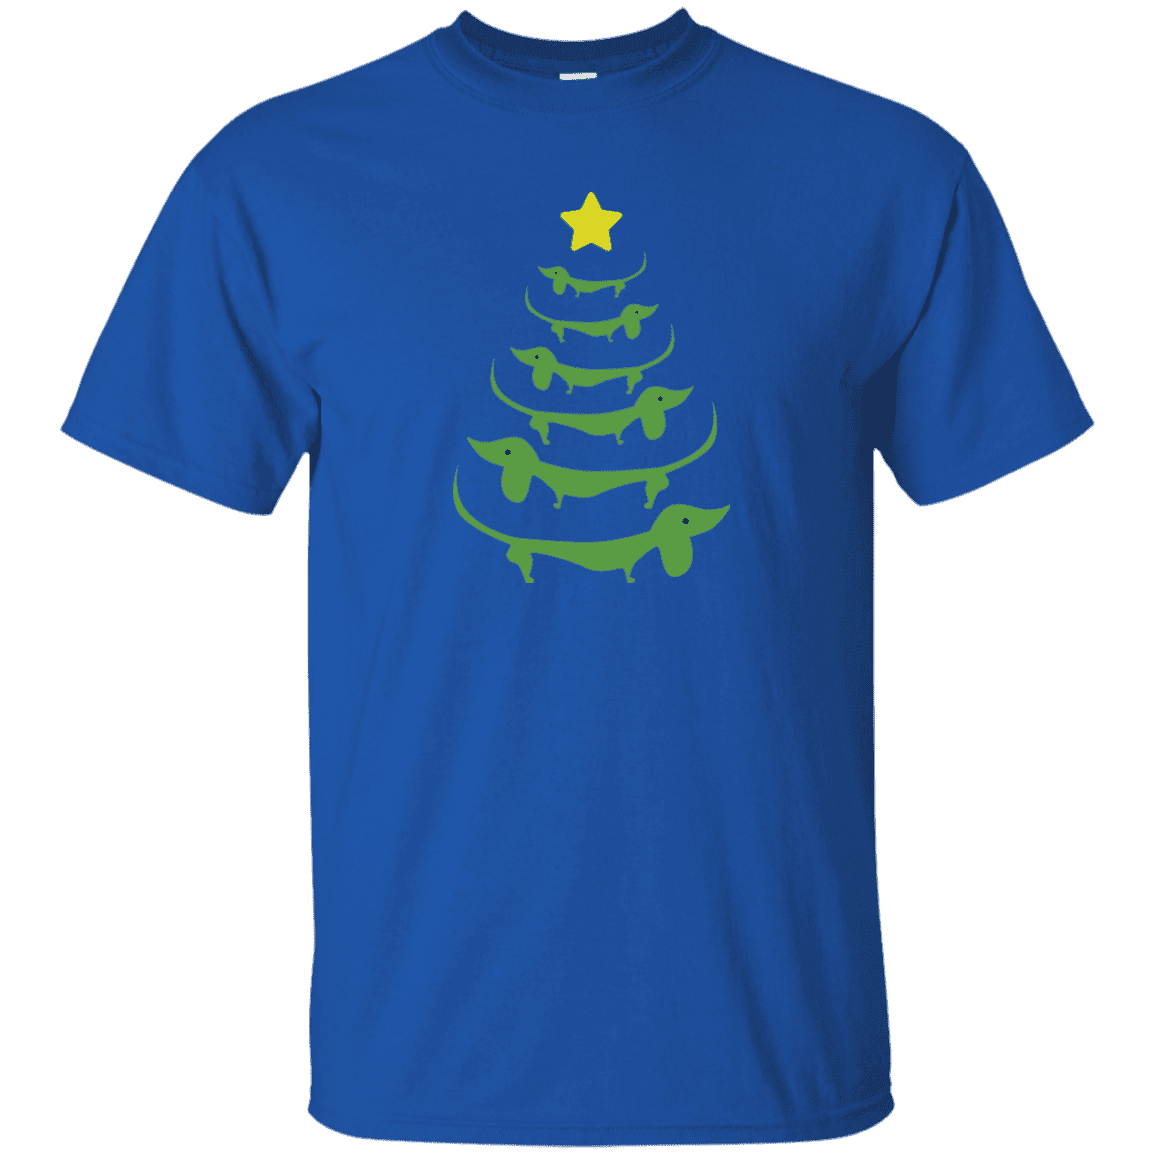 Dog Christmas Tree- T Shirt.